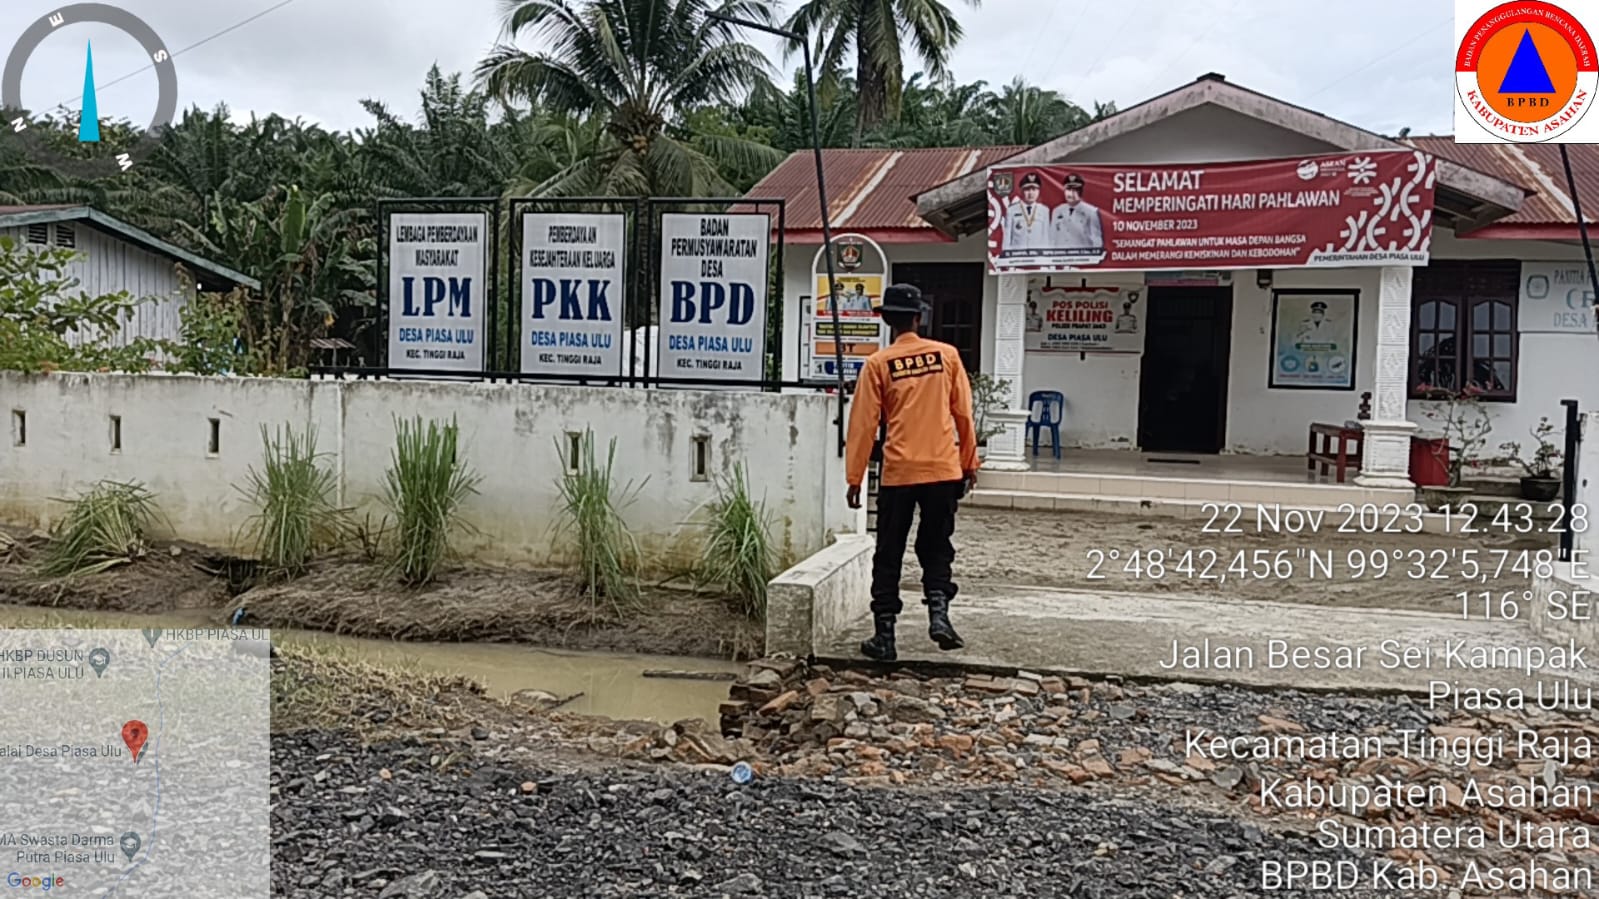 BPBD Kabupaten Asahan Melaporkan Situasi Kondisi Banjir di Desa Piasa Ulu Kecamatan Tinggi Raja.